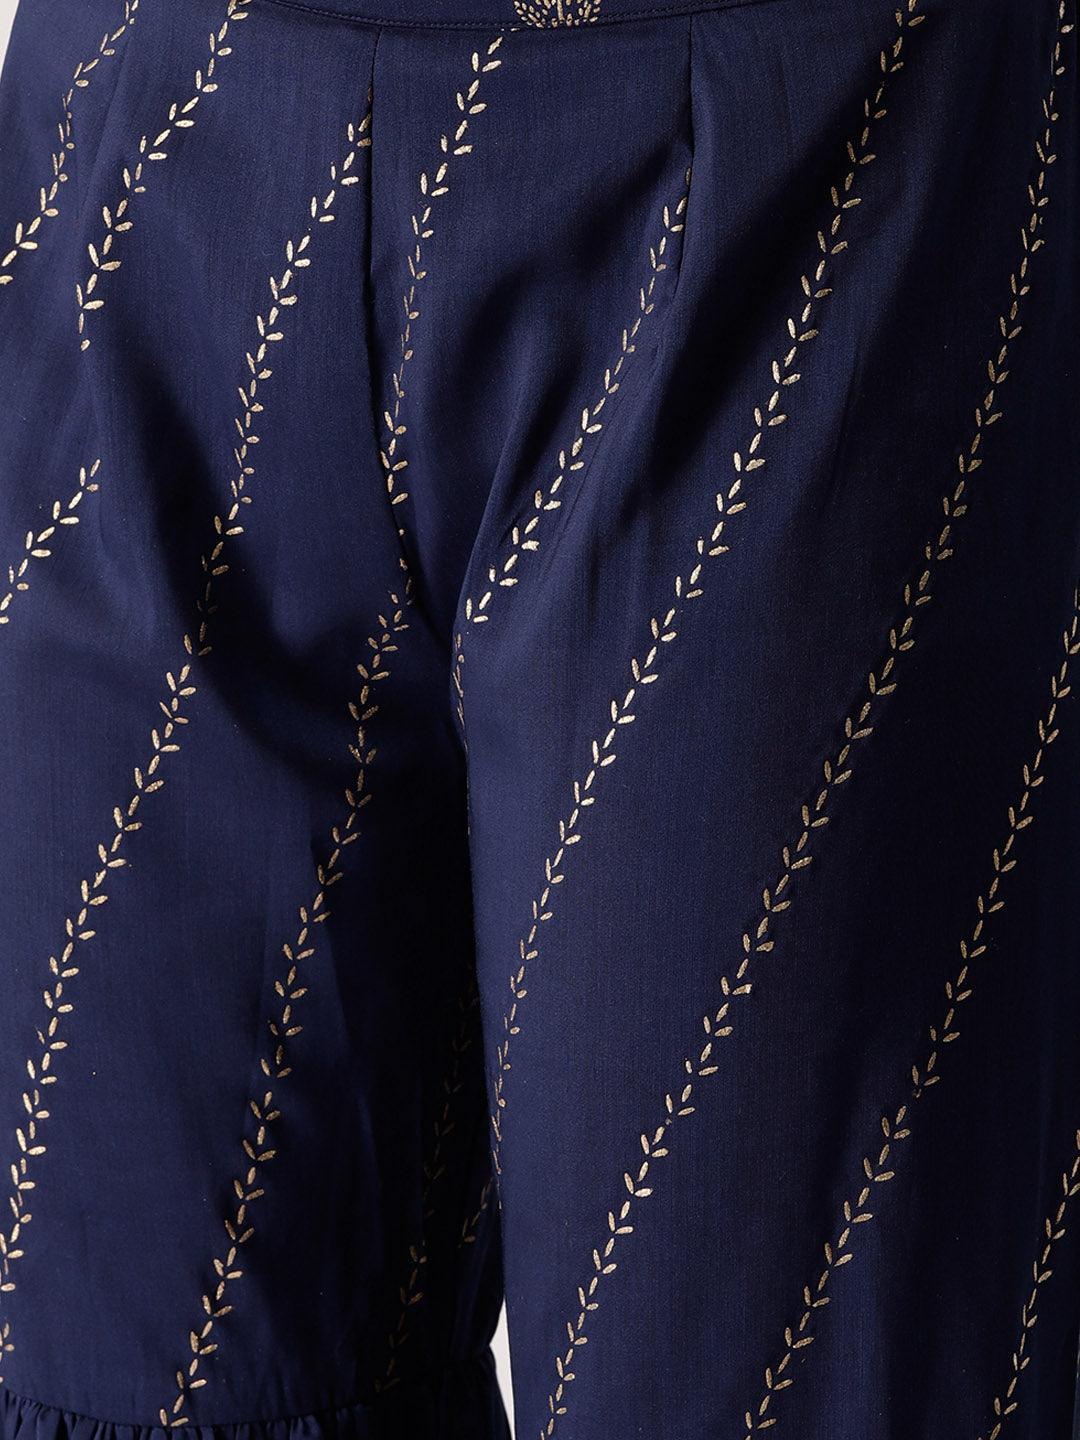 Navy Blue Printed Rayon Sharara Pants - ShopLibas